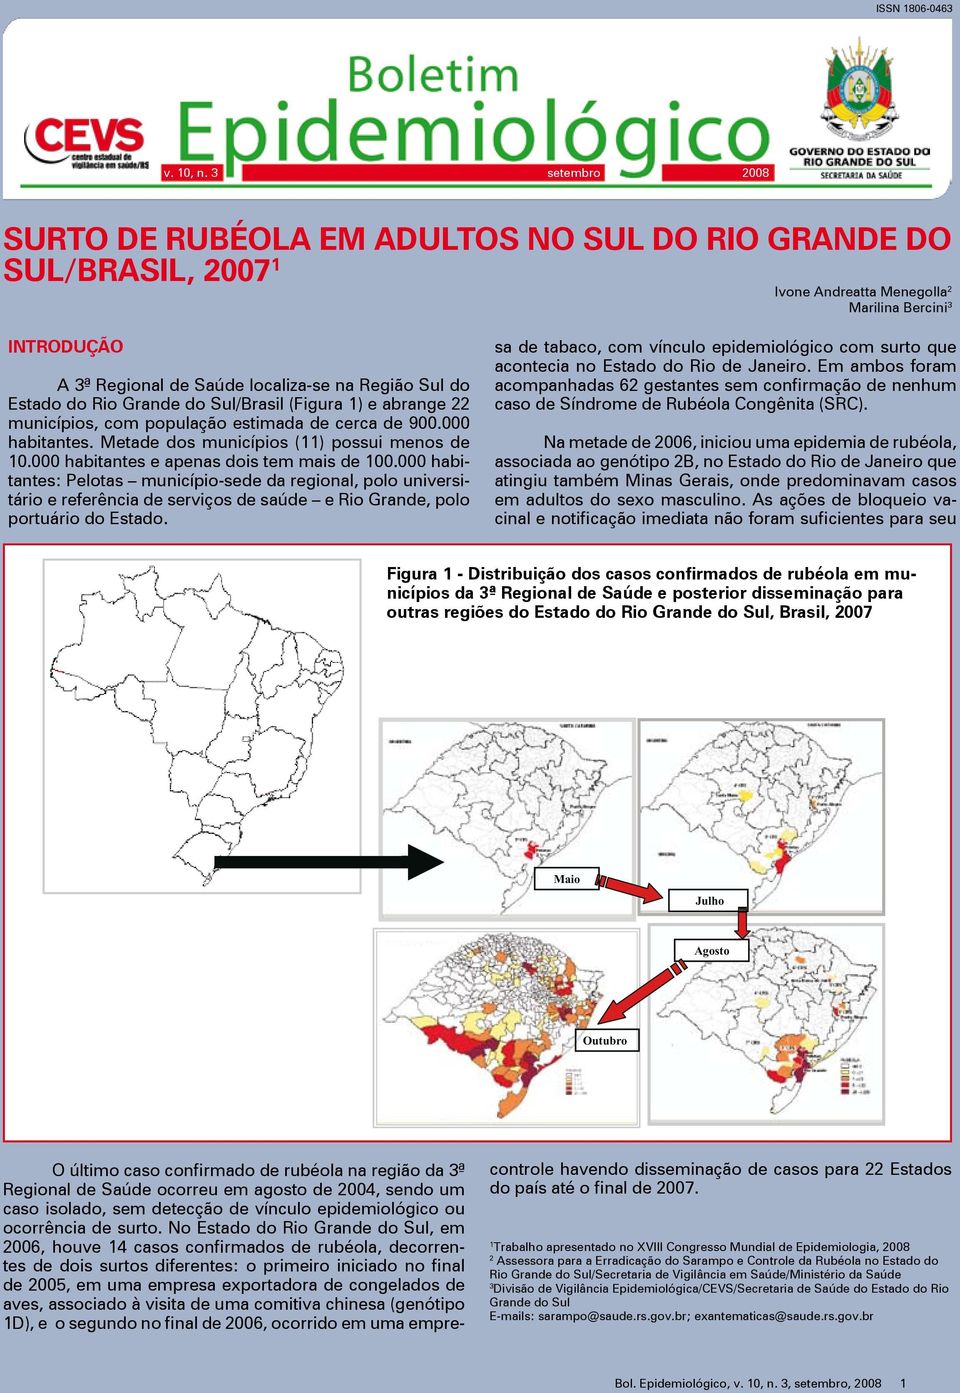 Estado do Rio Grande do Sul/Brasil (Figura 1) e abrange 22 municípios, com população estimada de cerca de 900.000 habitantes. Metade dos municípios (11) possui menos de 10.